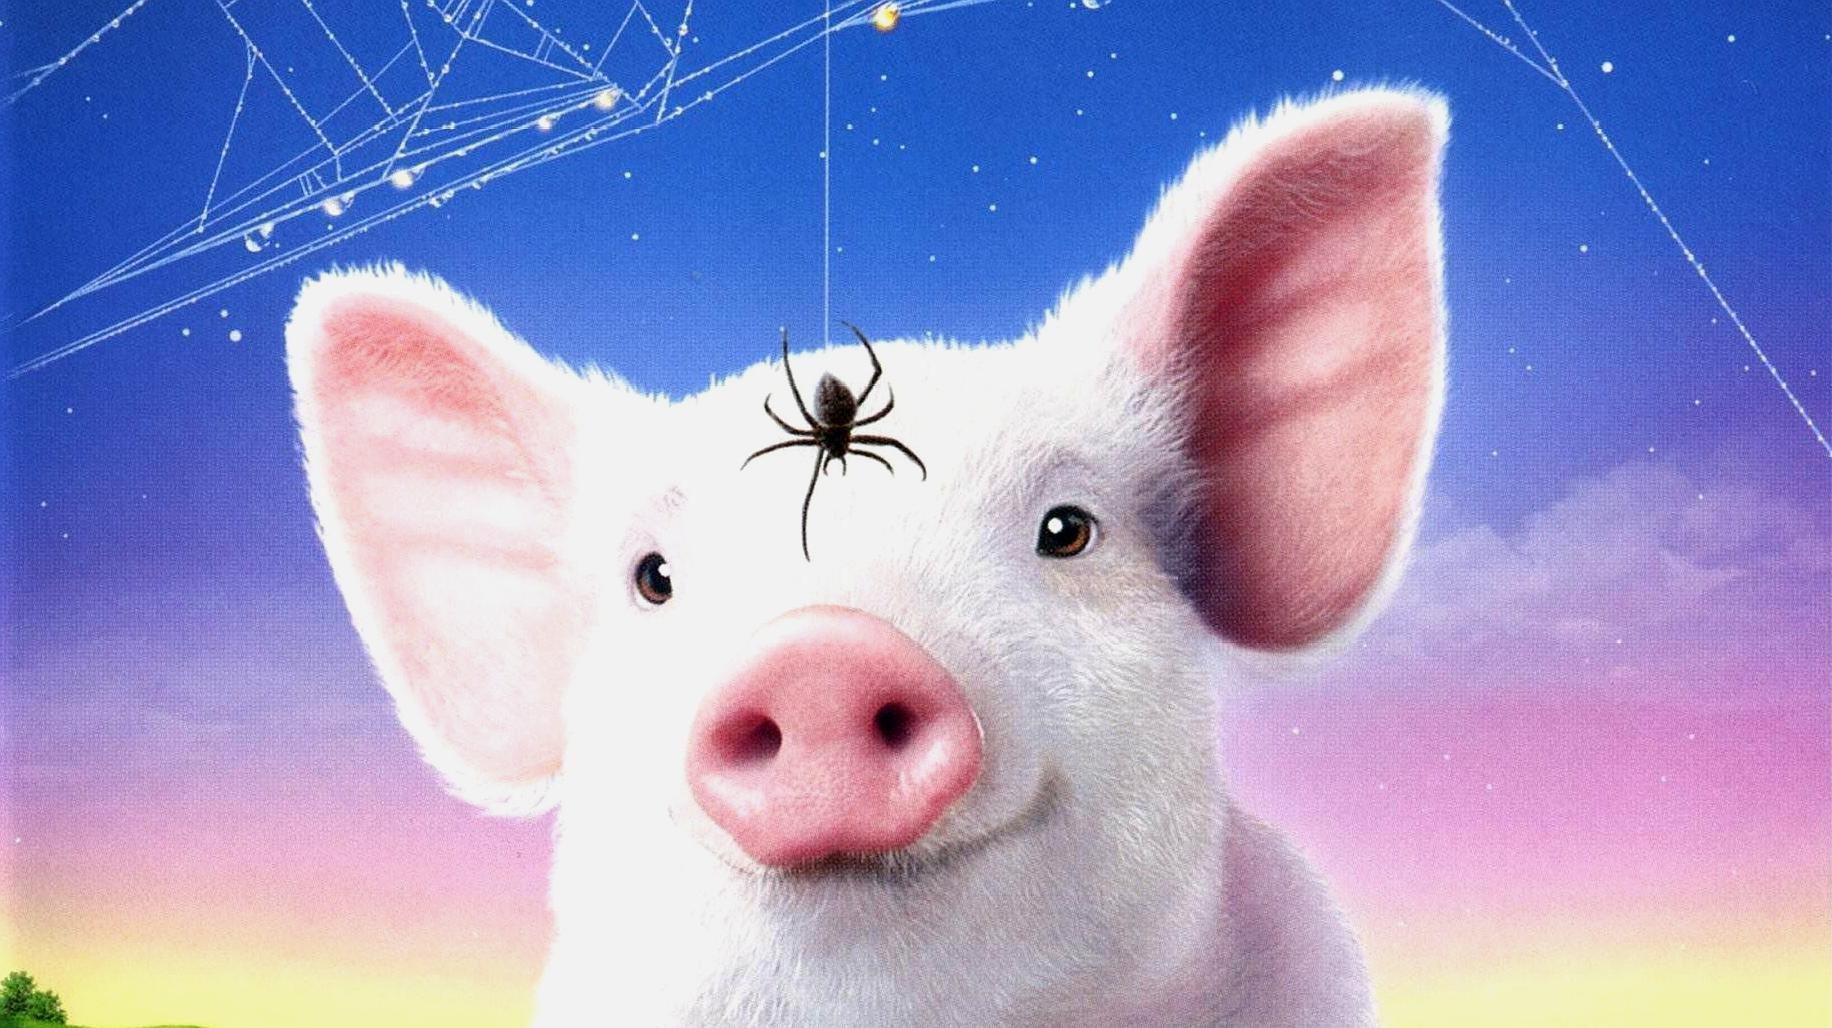 奇幻电影《夏洛特的网》,网红小猪为了不被吃,竟和蜘蛛做了朋友